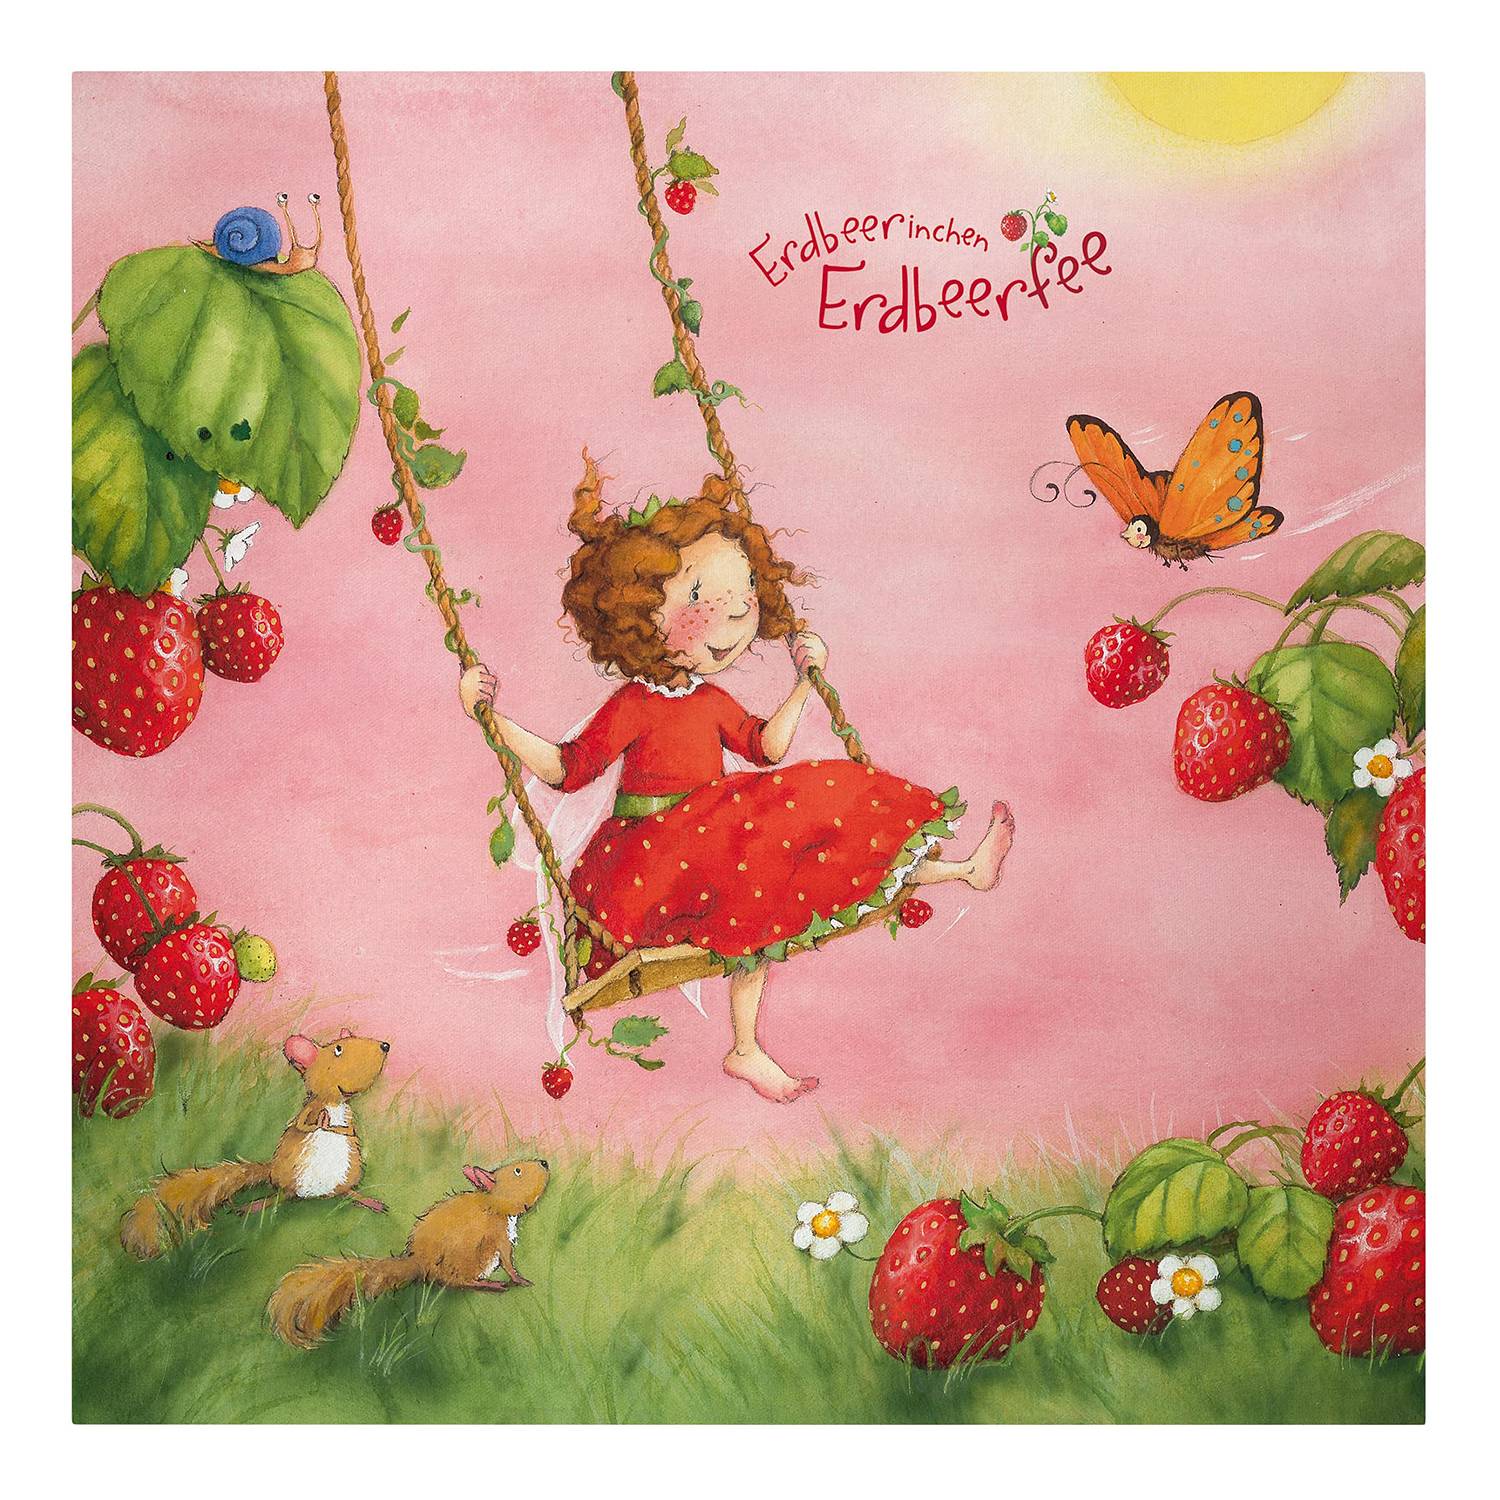 Bild Erdbeerinchen Erdbeerfee II kaufen | home24